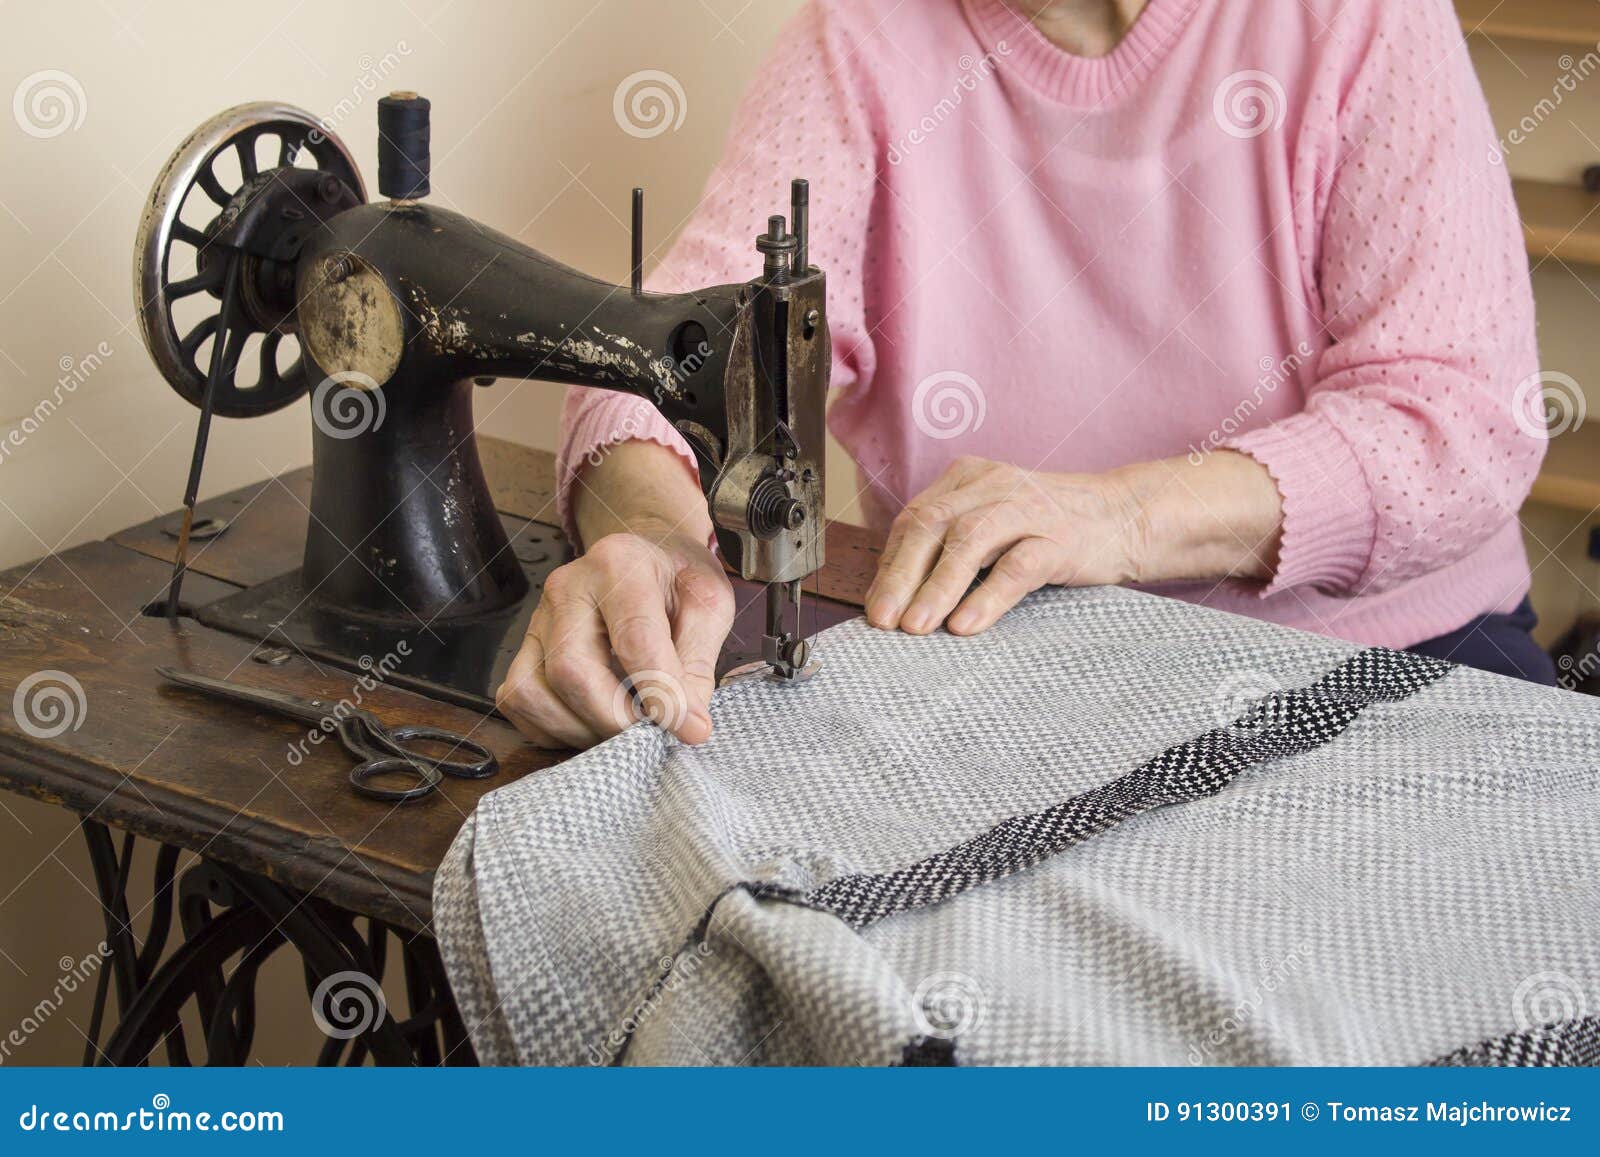 Машинка плохо шьет. Женщина за швейной машиной. Швейная машина шьет швея. Ручное шитье. Машинка для шитья Старая.